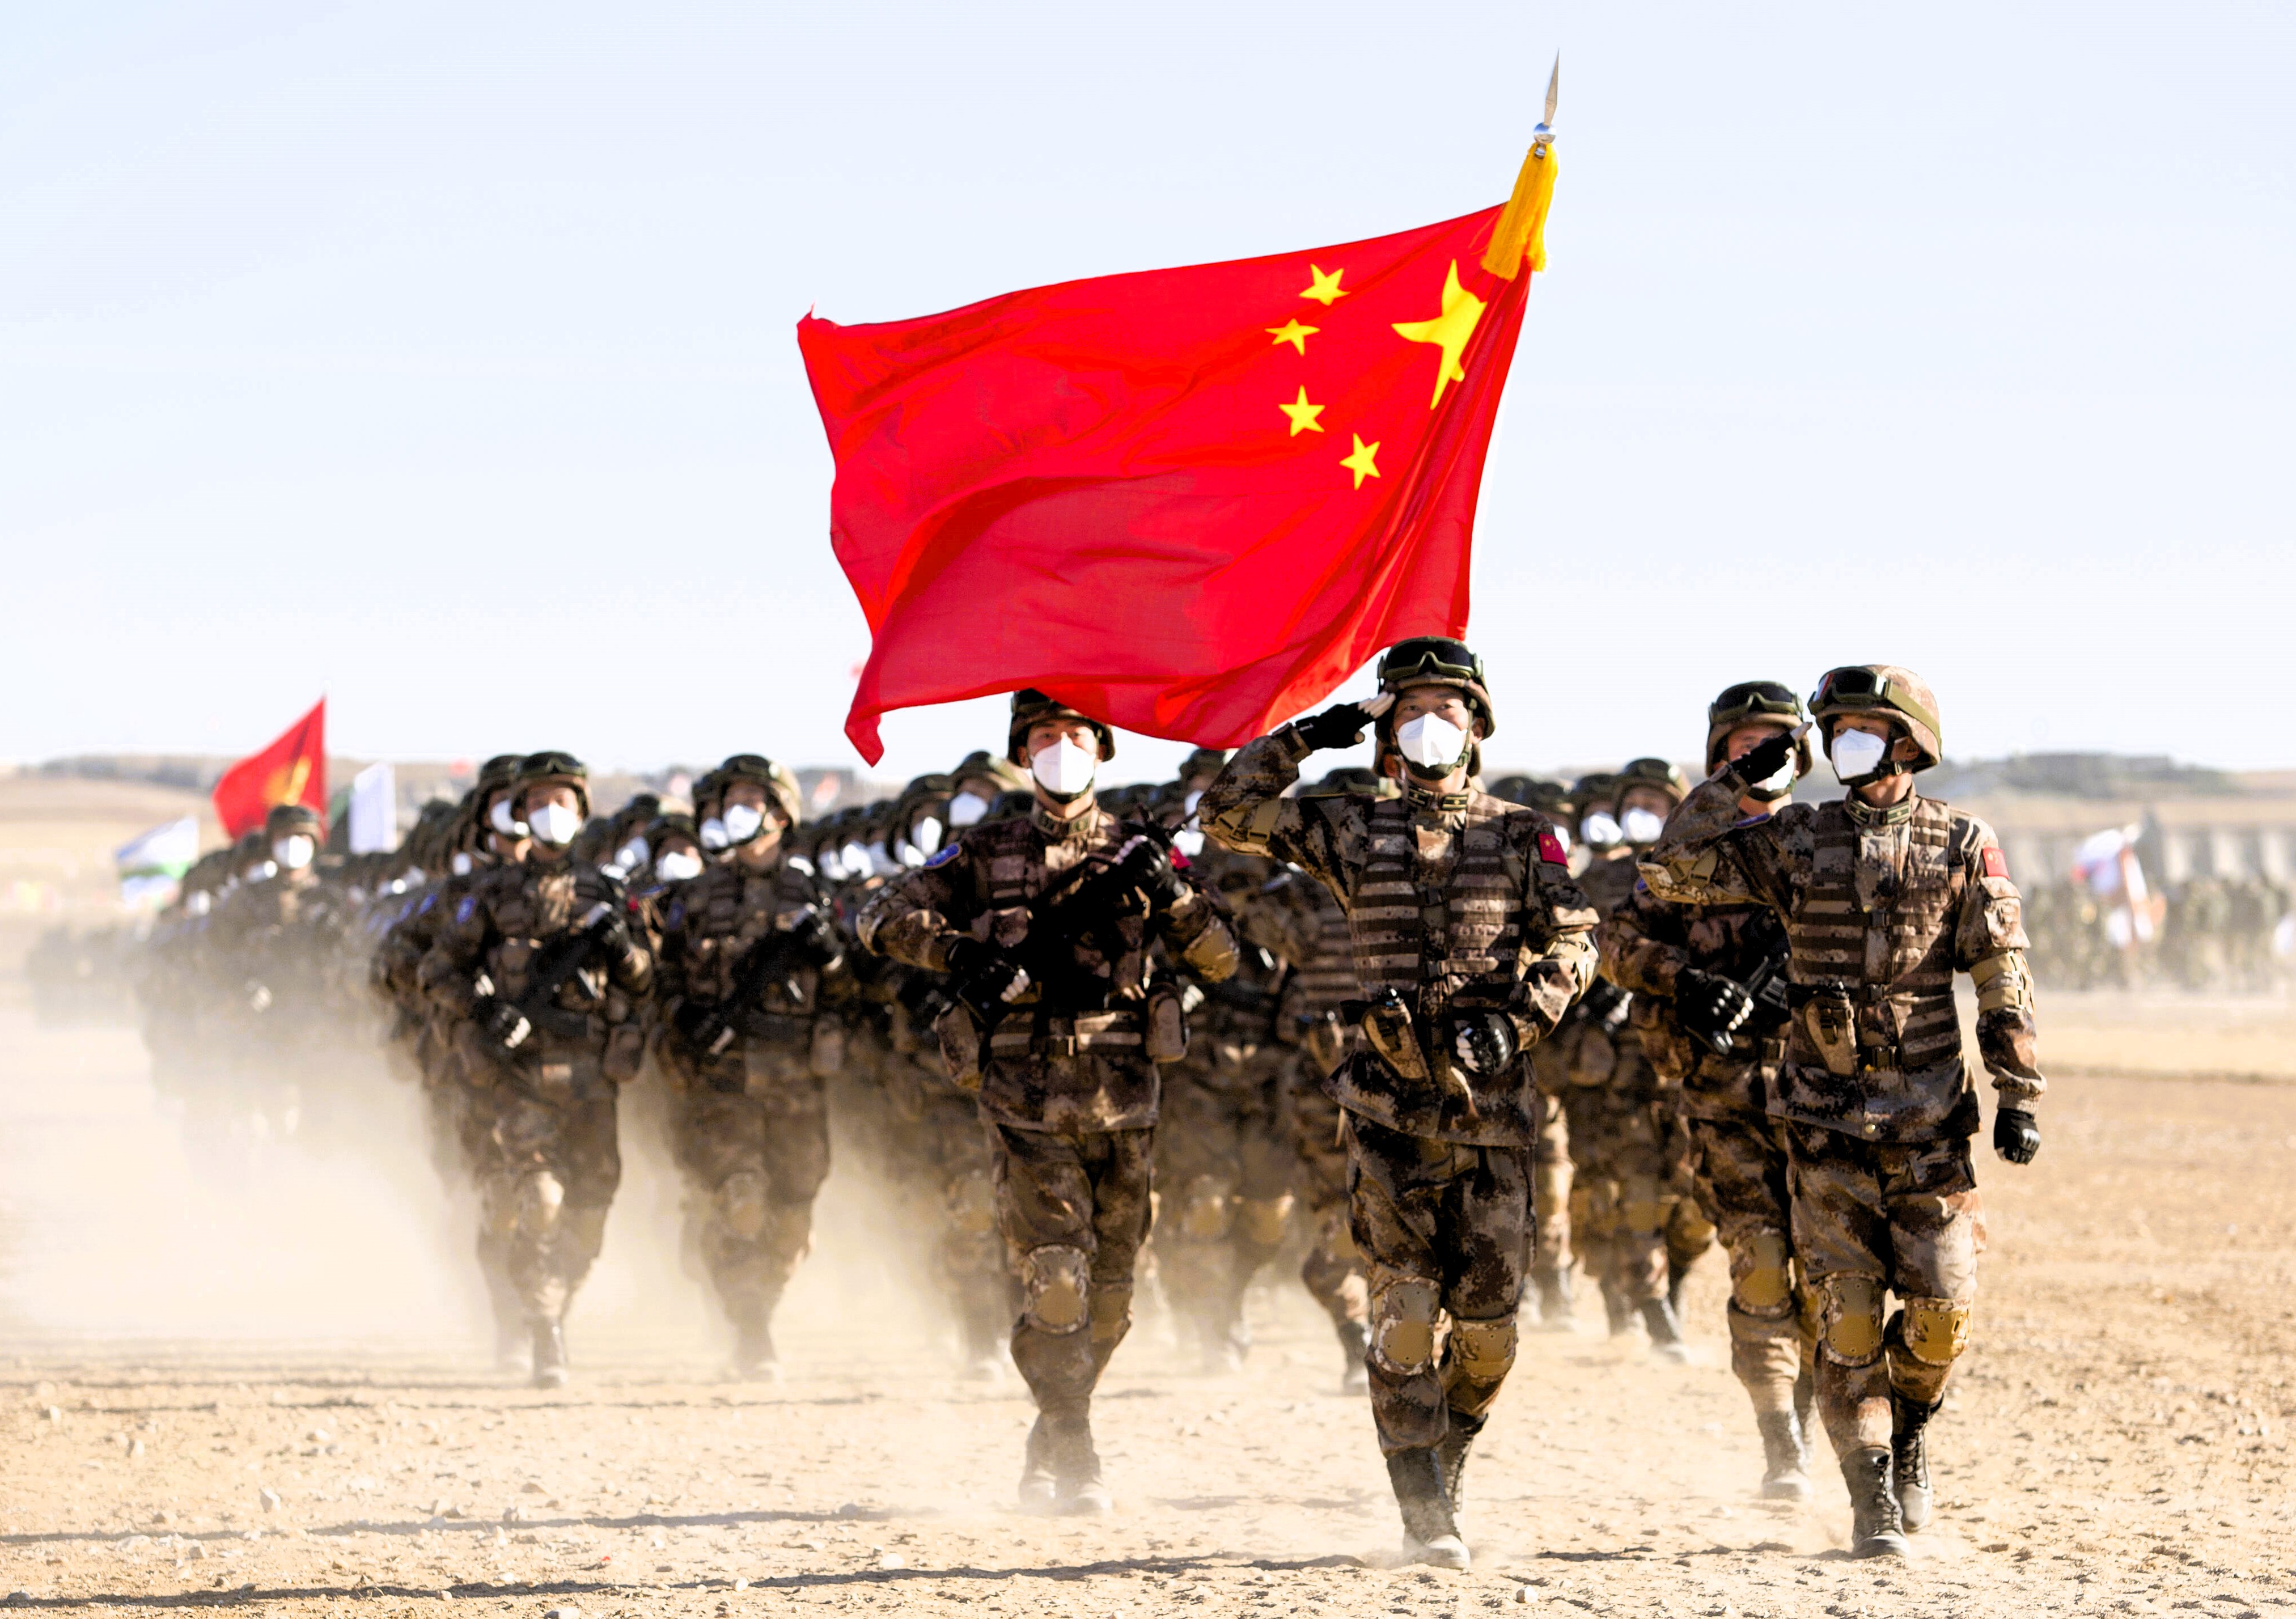 Alarmstufe Rot! Chinesische Truppen in Belarus gelandet, Truppen sammeln sich an der Ukraine-Grenze!